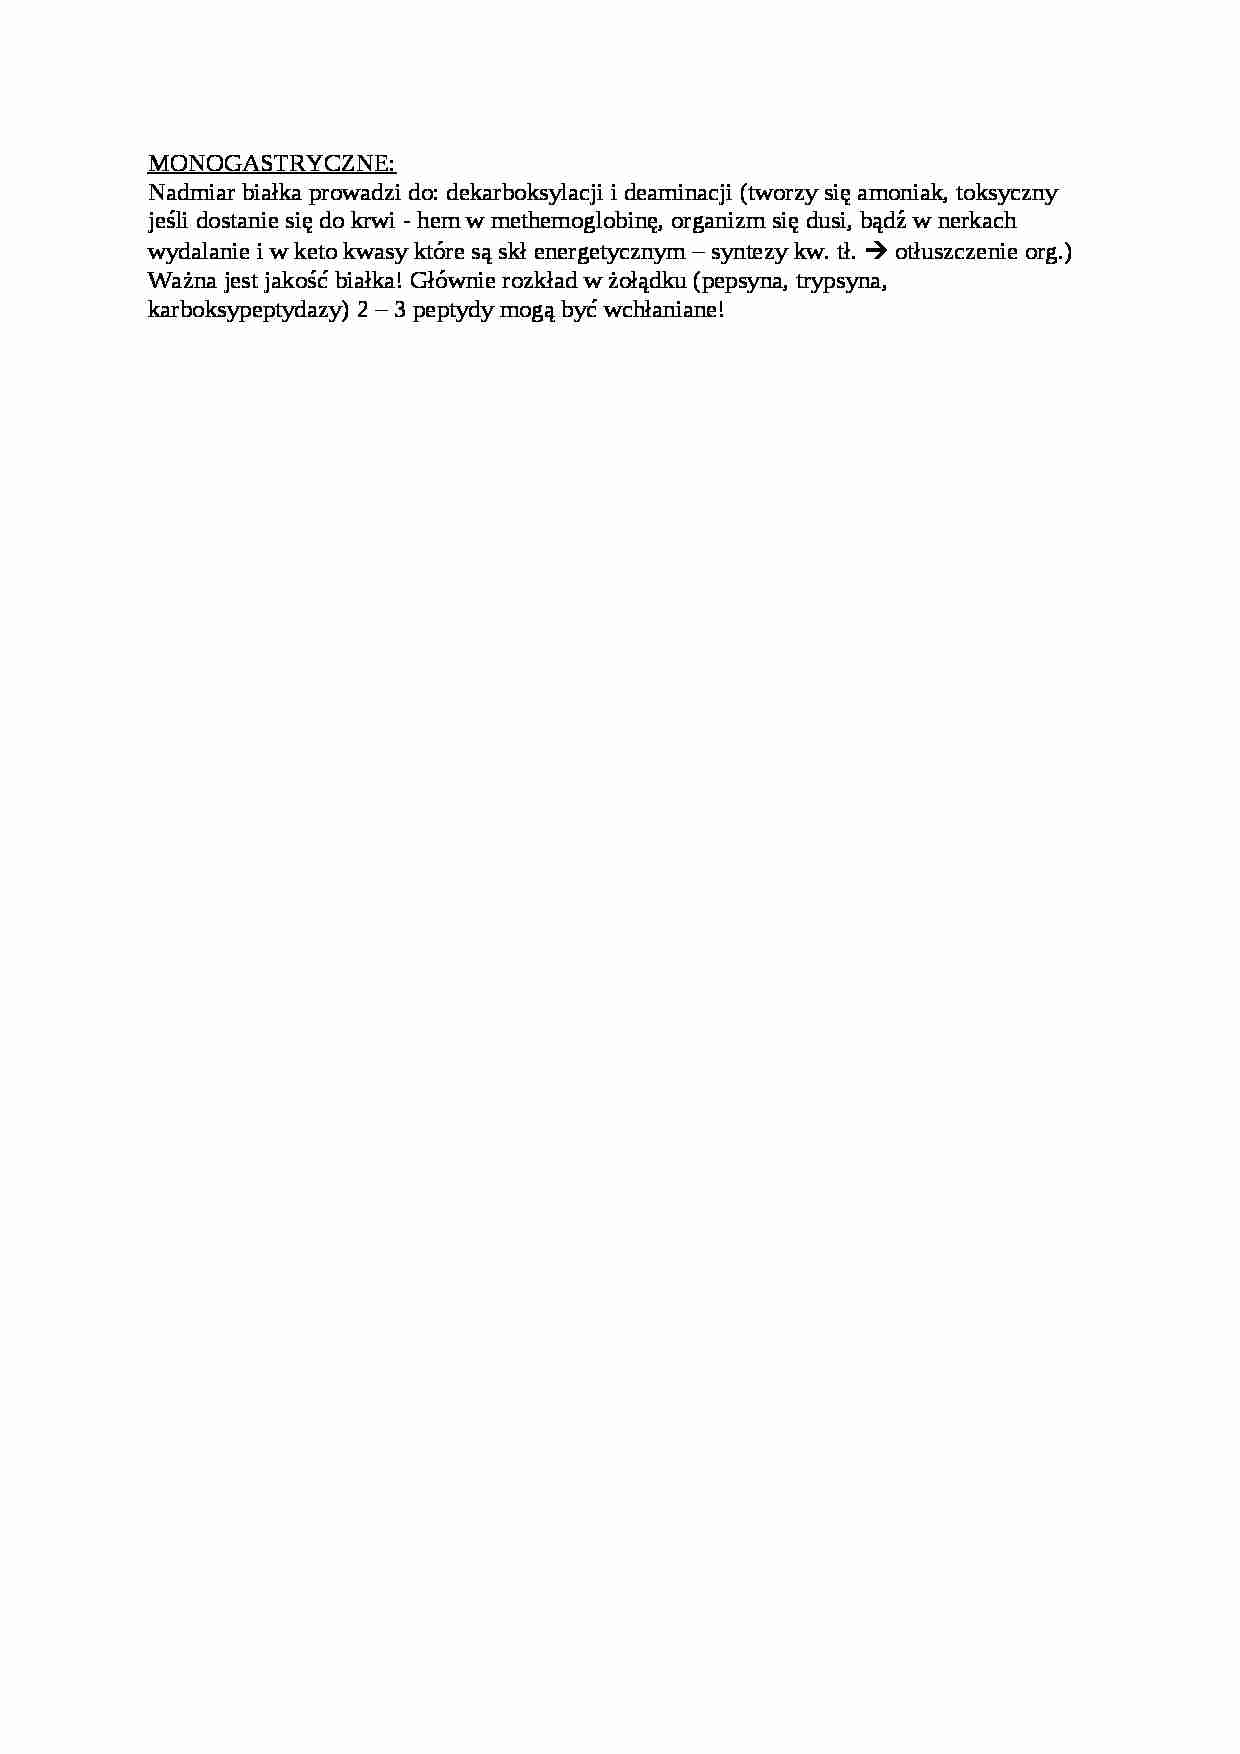 Trawienie poligastryczne- monogastryczne - opracowanie, sem IV - strona 1